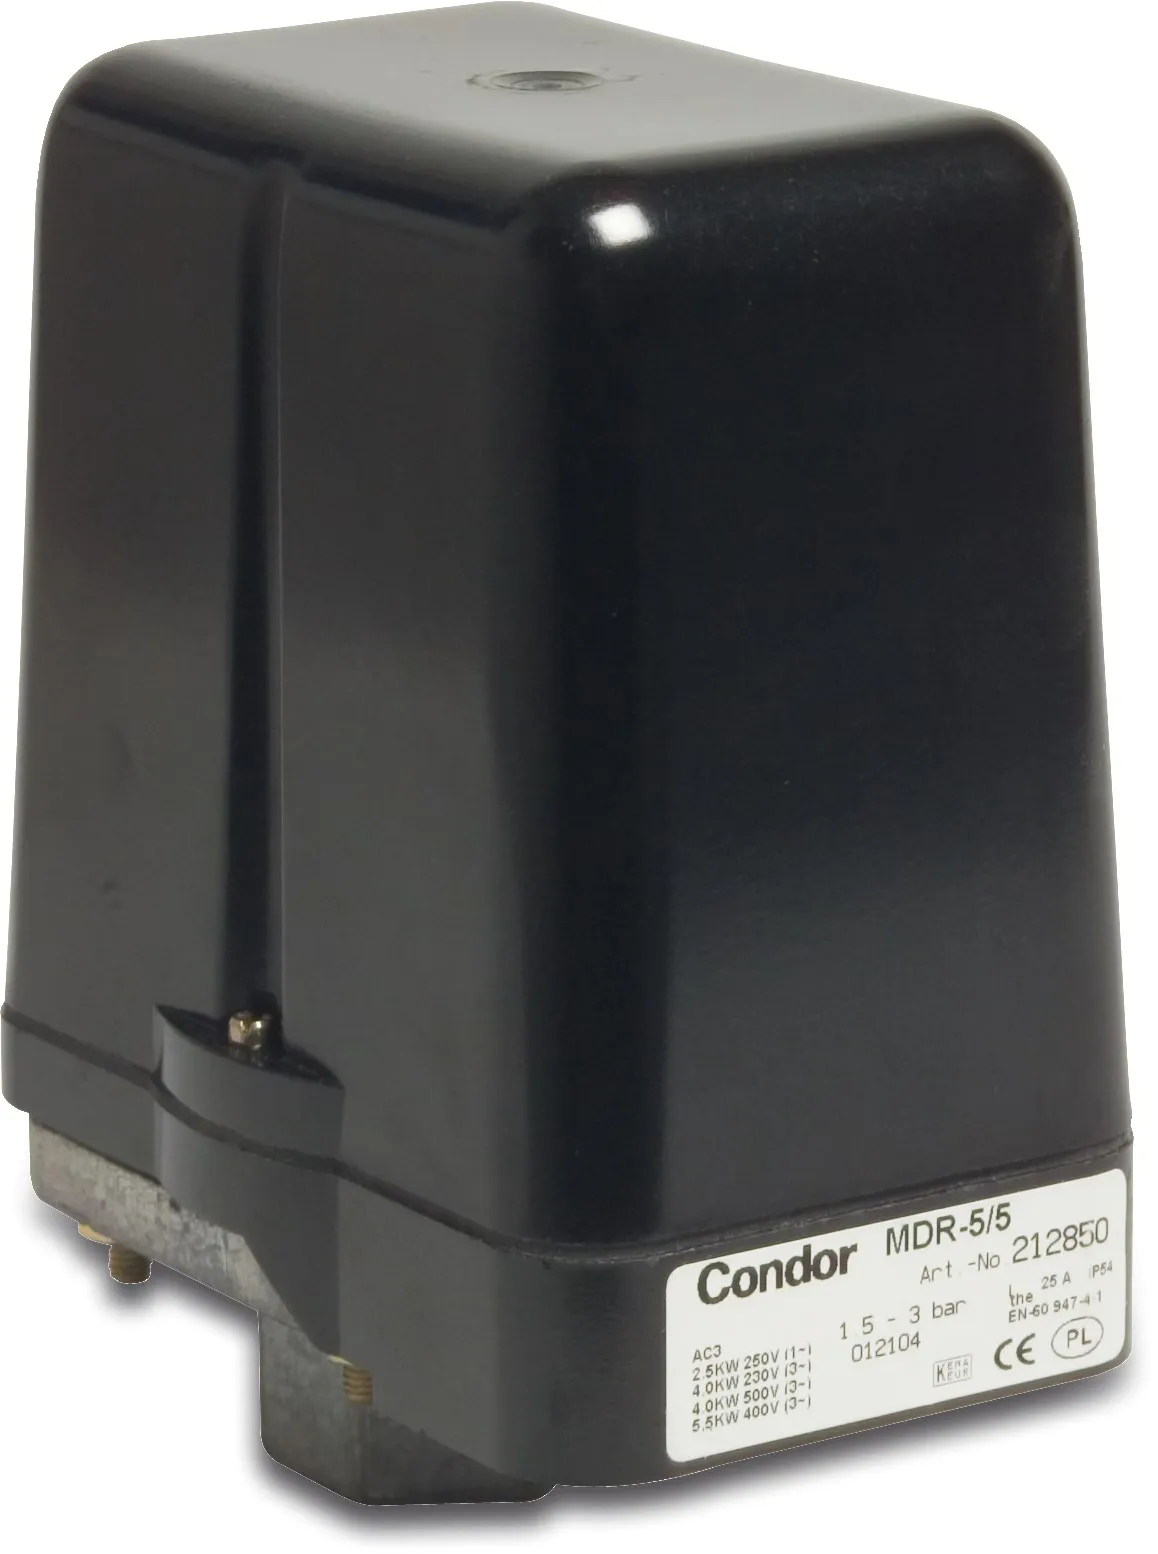 Condor Druckschalter 1/2" Innengewinde 25A 230/400VAC type MDR 5-5